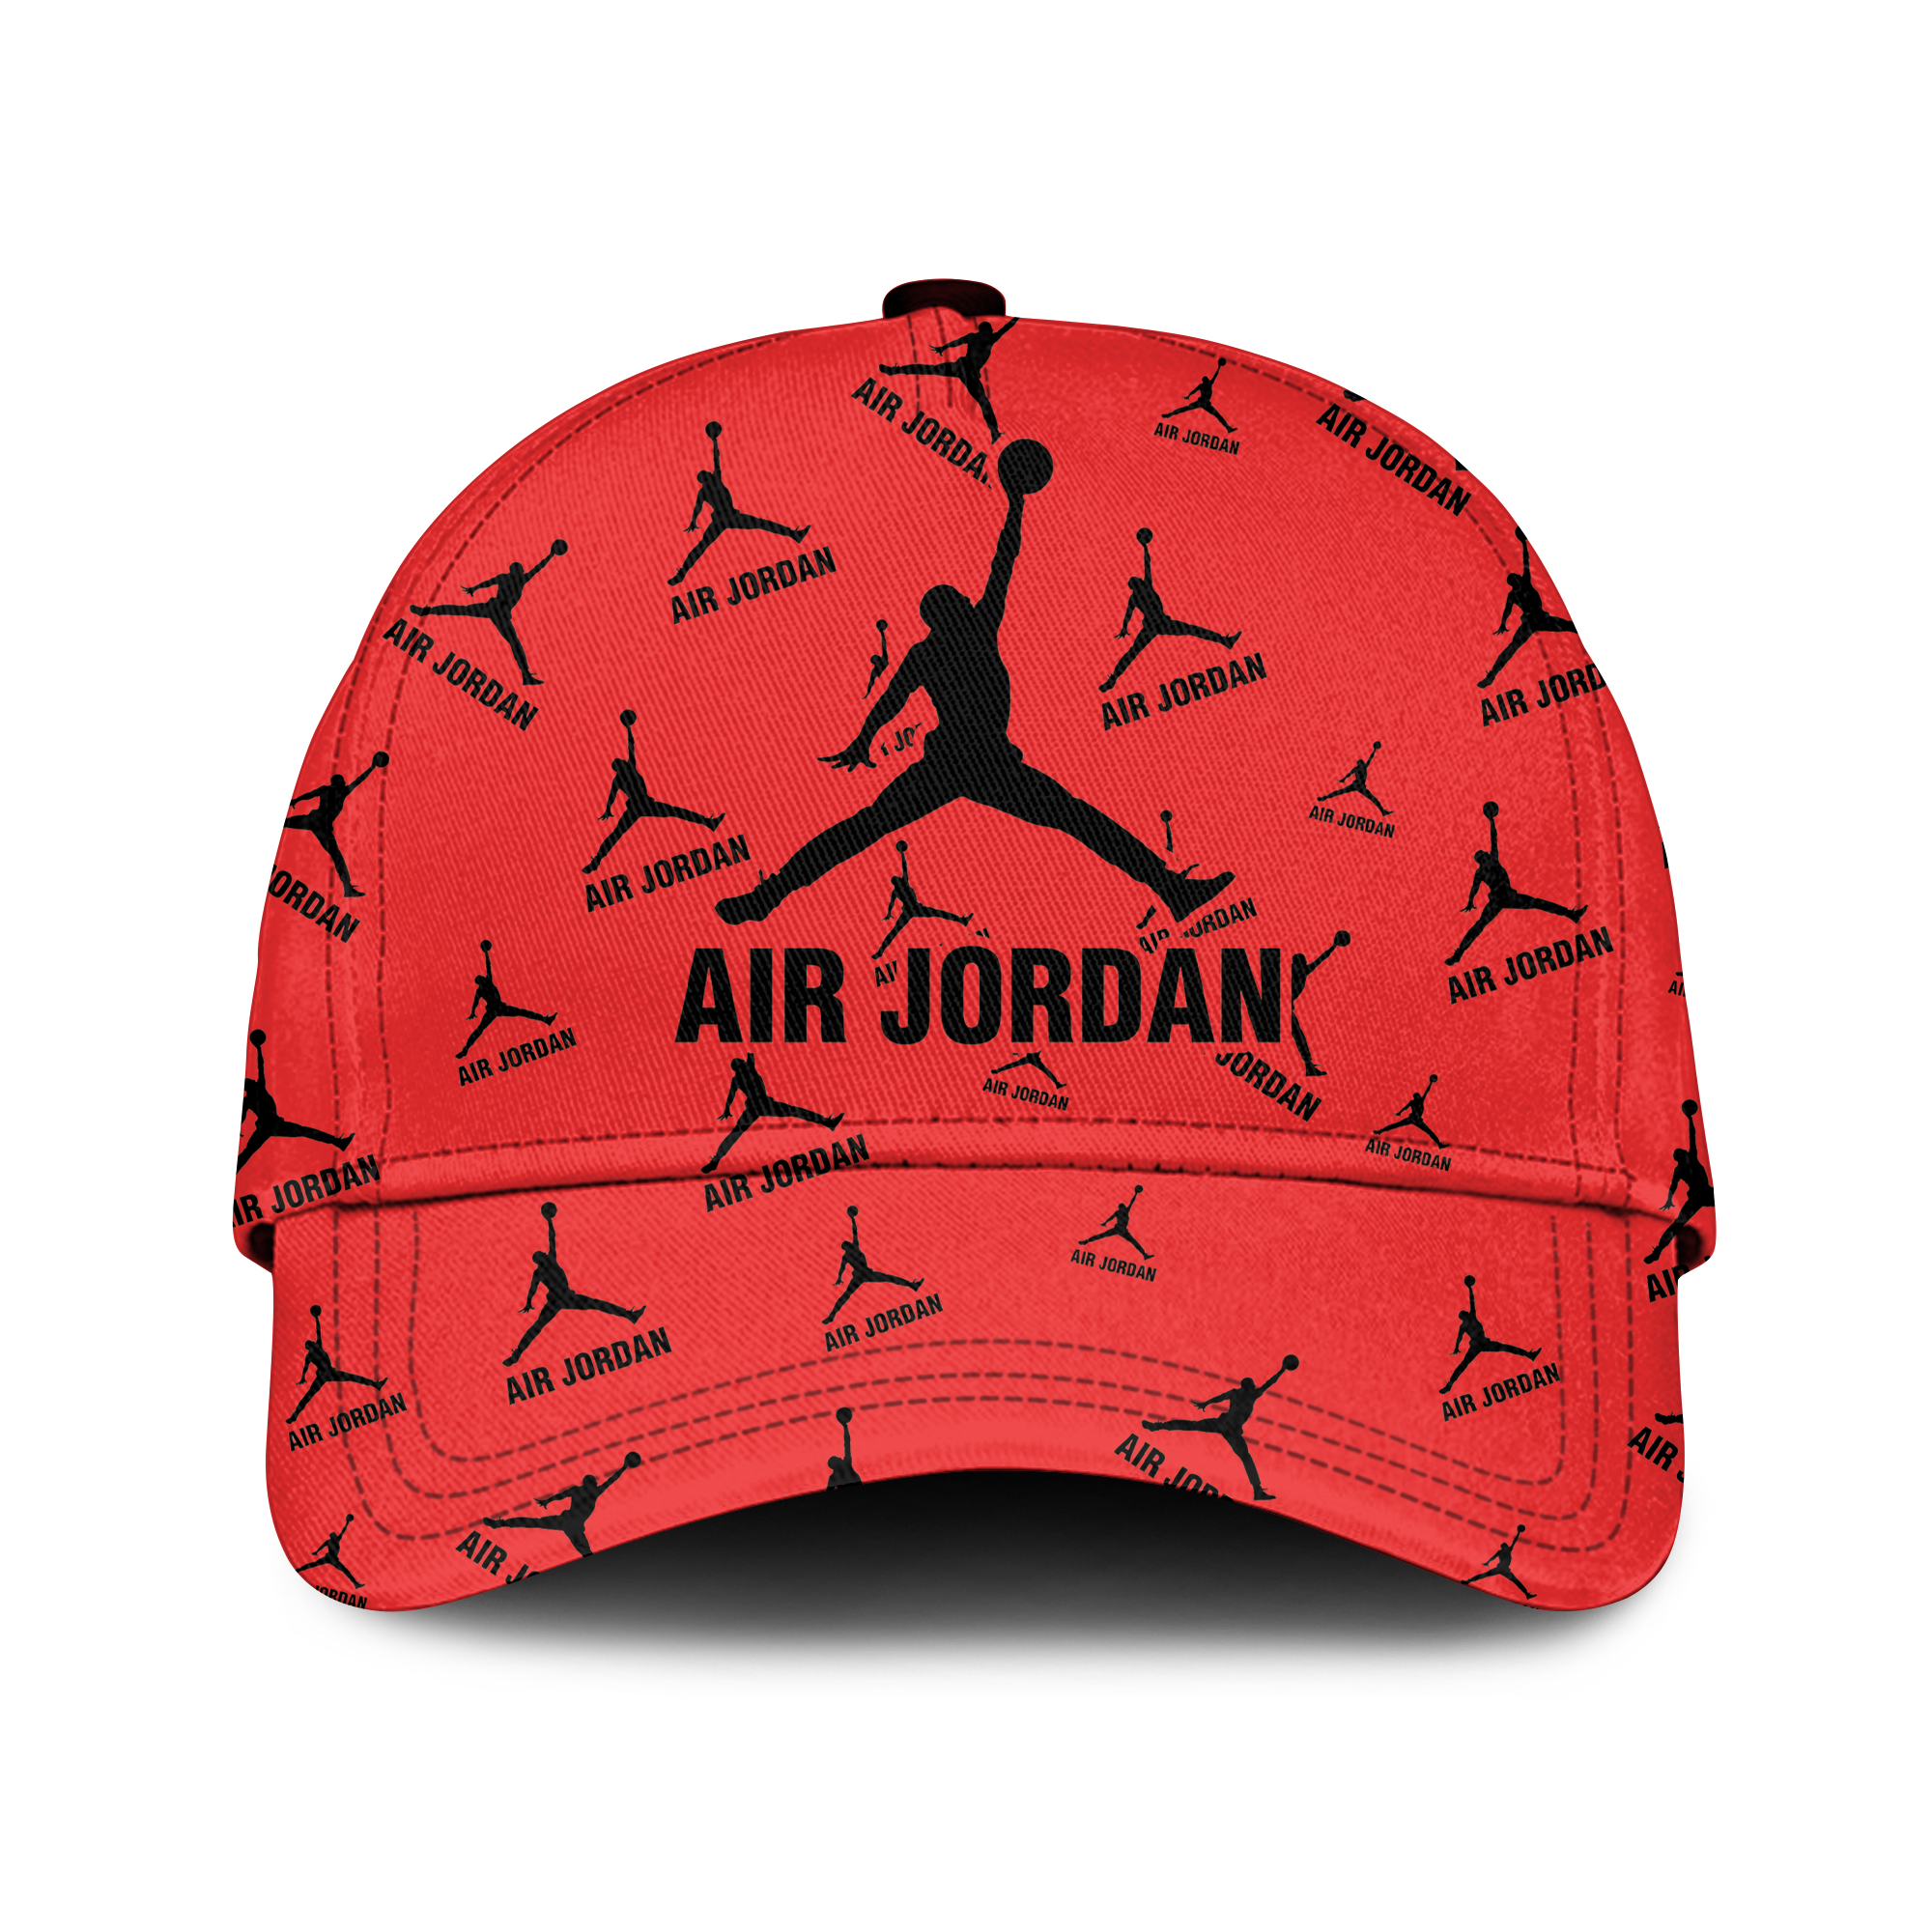 Air Jordan Red Black classic cap